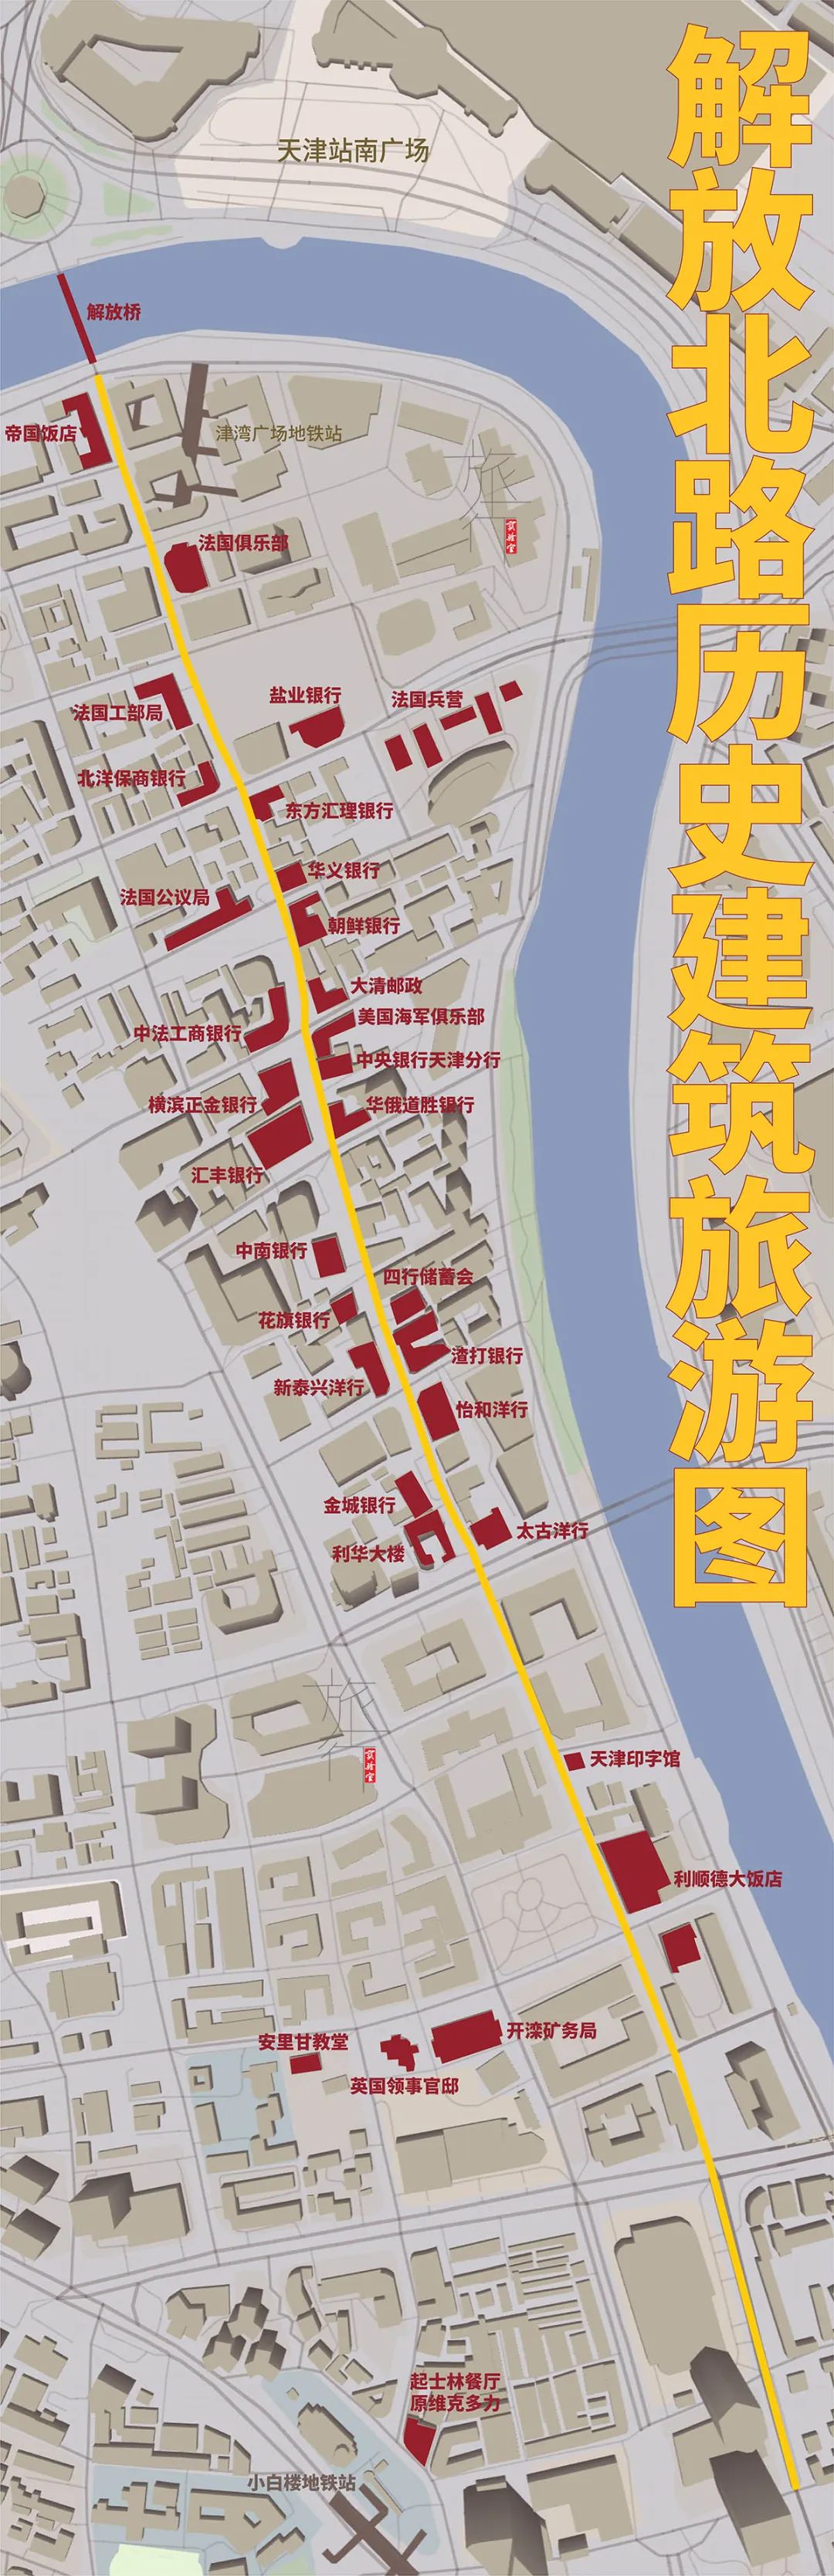 天津旅游地图:解放北路号称东方华尔街,为何不如上海外滩有名?